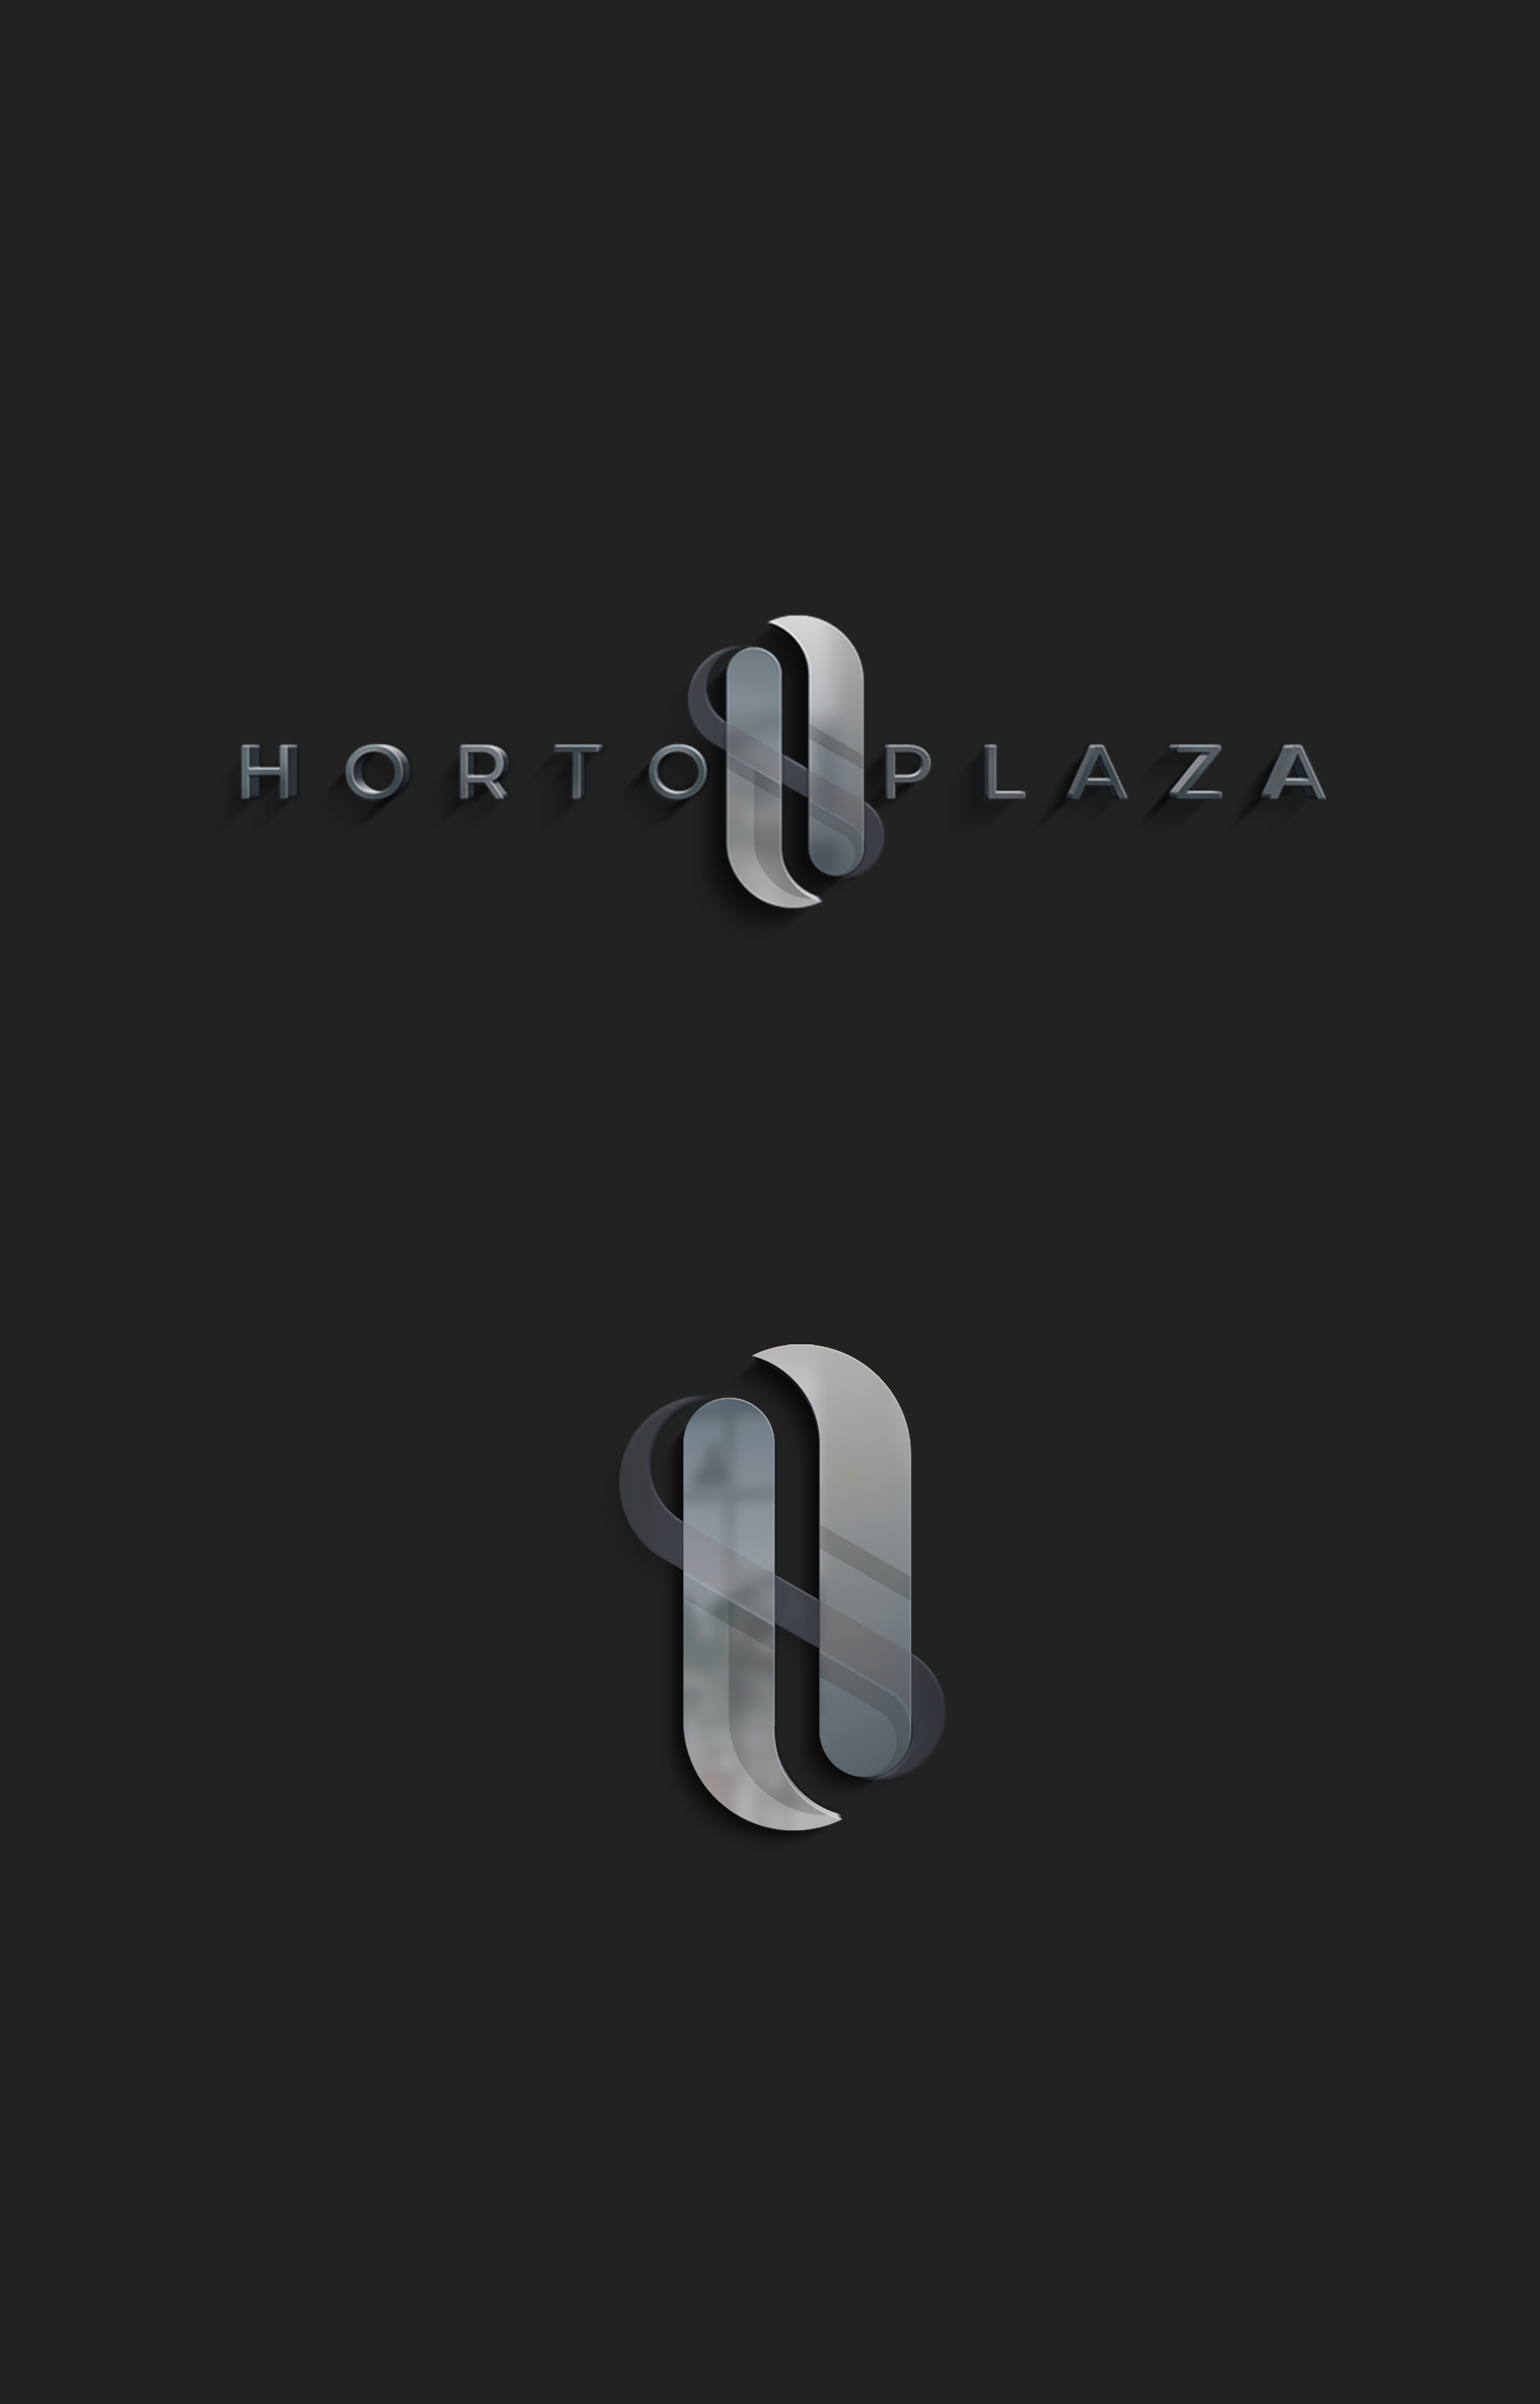 Criação de logo e marca - Projeto Hotel em Hortolândia Horto Plaza